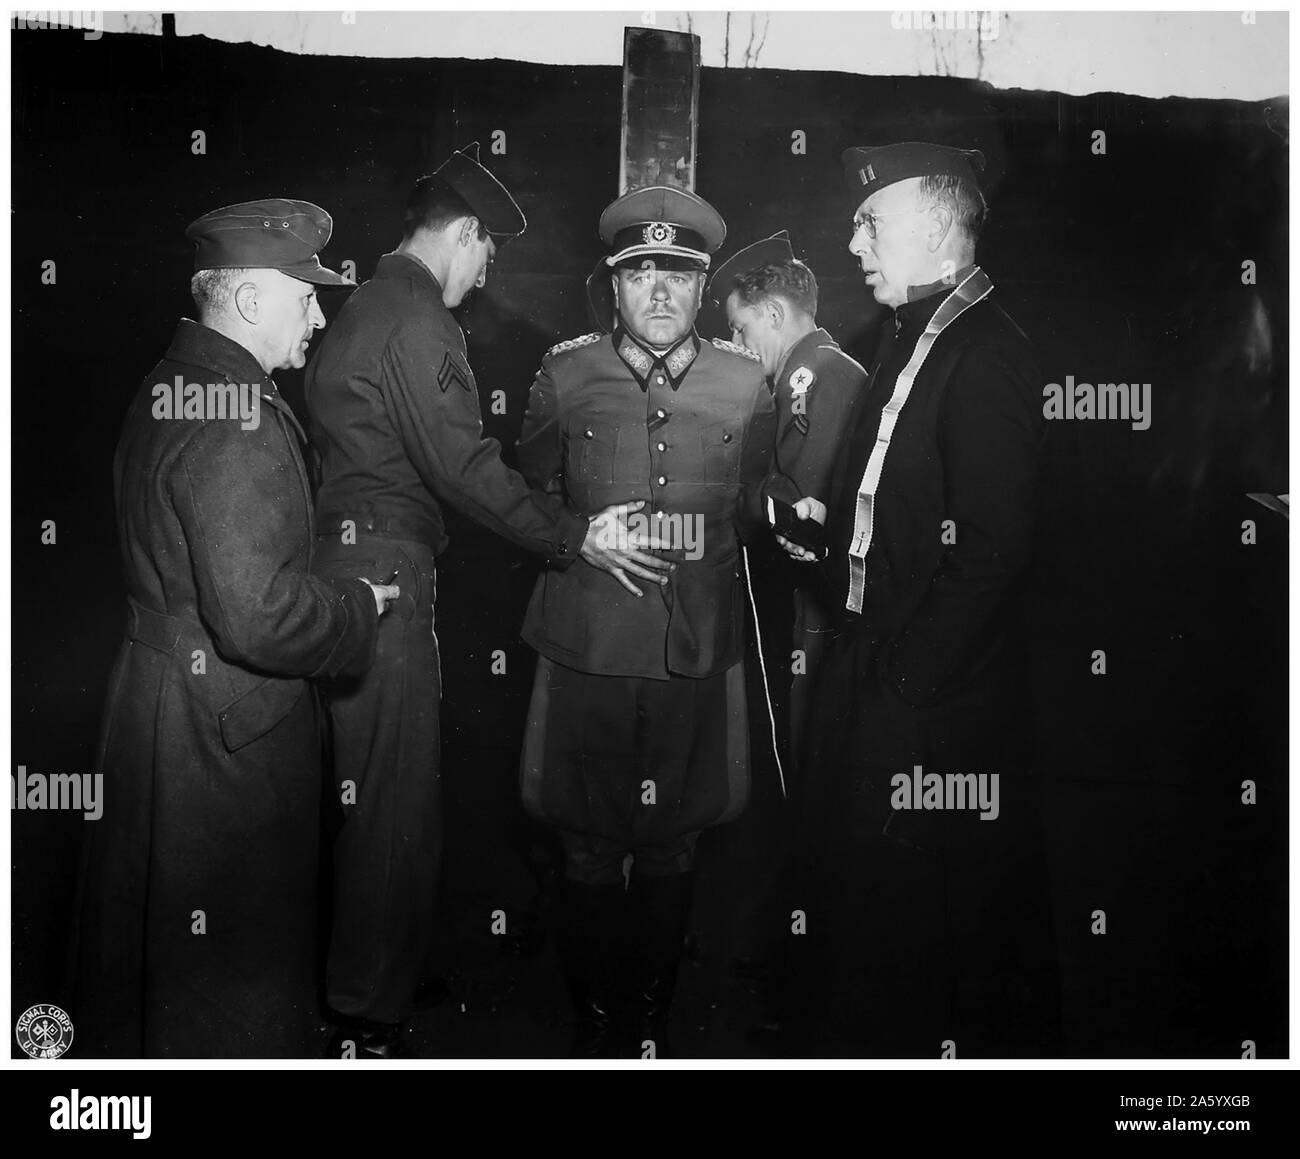 Foto von dem deutschen General Anton Dostler (1891-1945) gebunden an einen Pfahl vor seiner Hinrichtung durch ein Erschießungskommando, Italien. Datiert 1945 Stockfoto